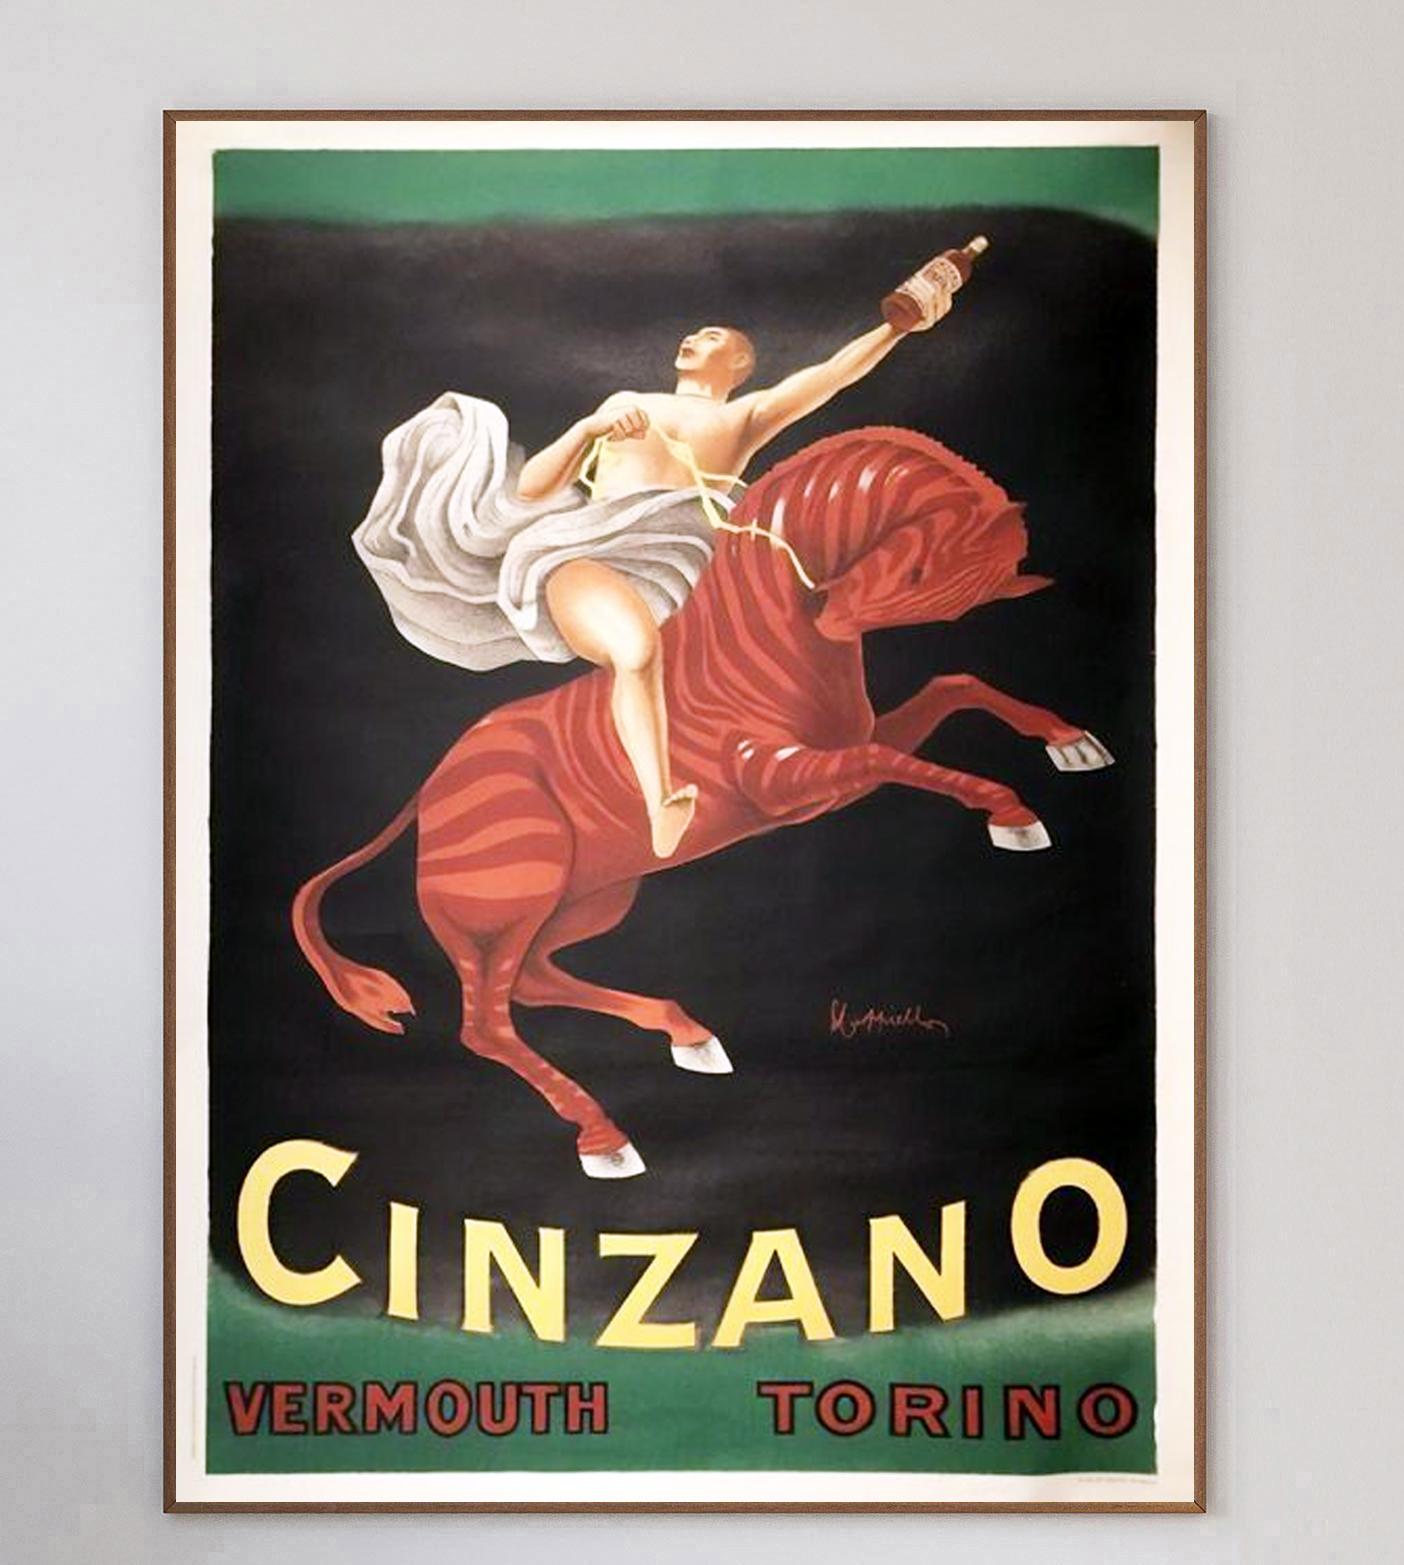 Datant de 1757, Cinzano est une marque emblématique synonyme de Casanova. Entreprise familiale jusqu'en 1985 (aujourd'hui propriété de Campari), le célèbre vermouth de Turin est bien connu pour ses publicités dans lesquelles figurent des